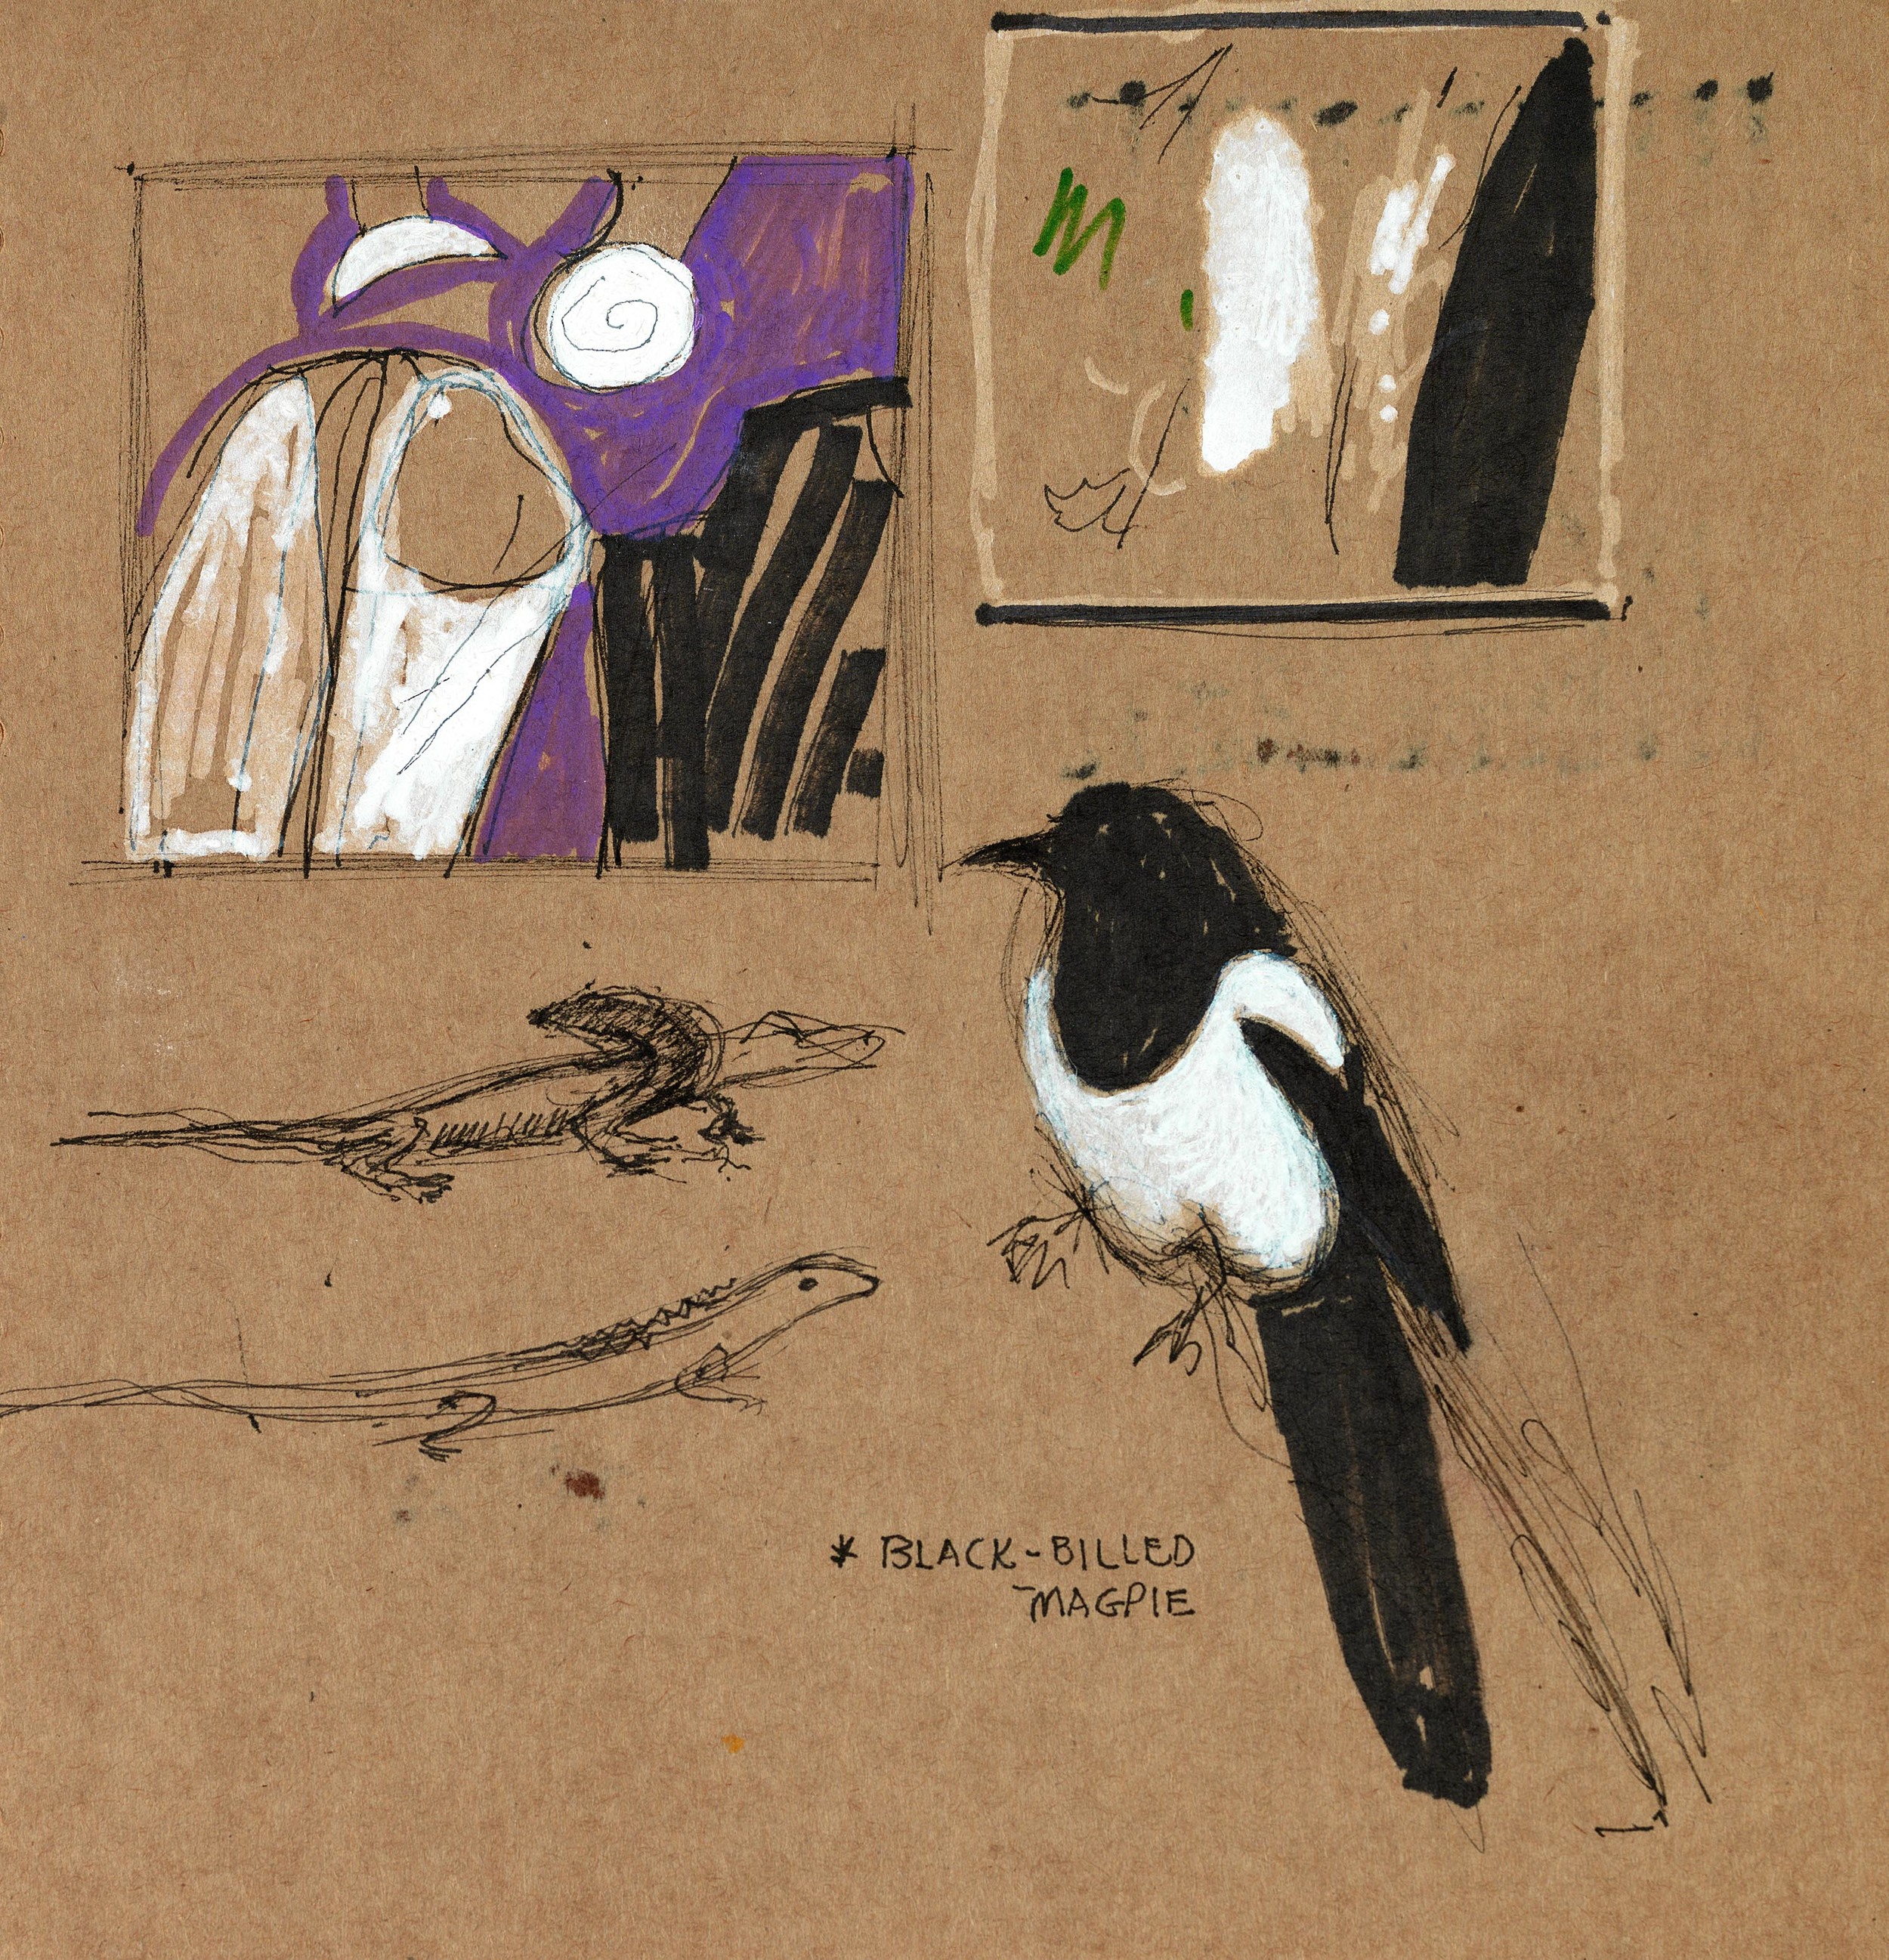 Black-billed Magpie 2012